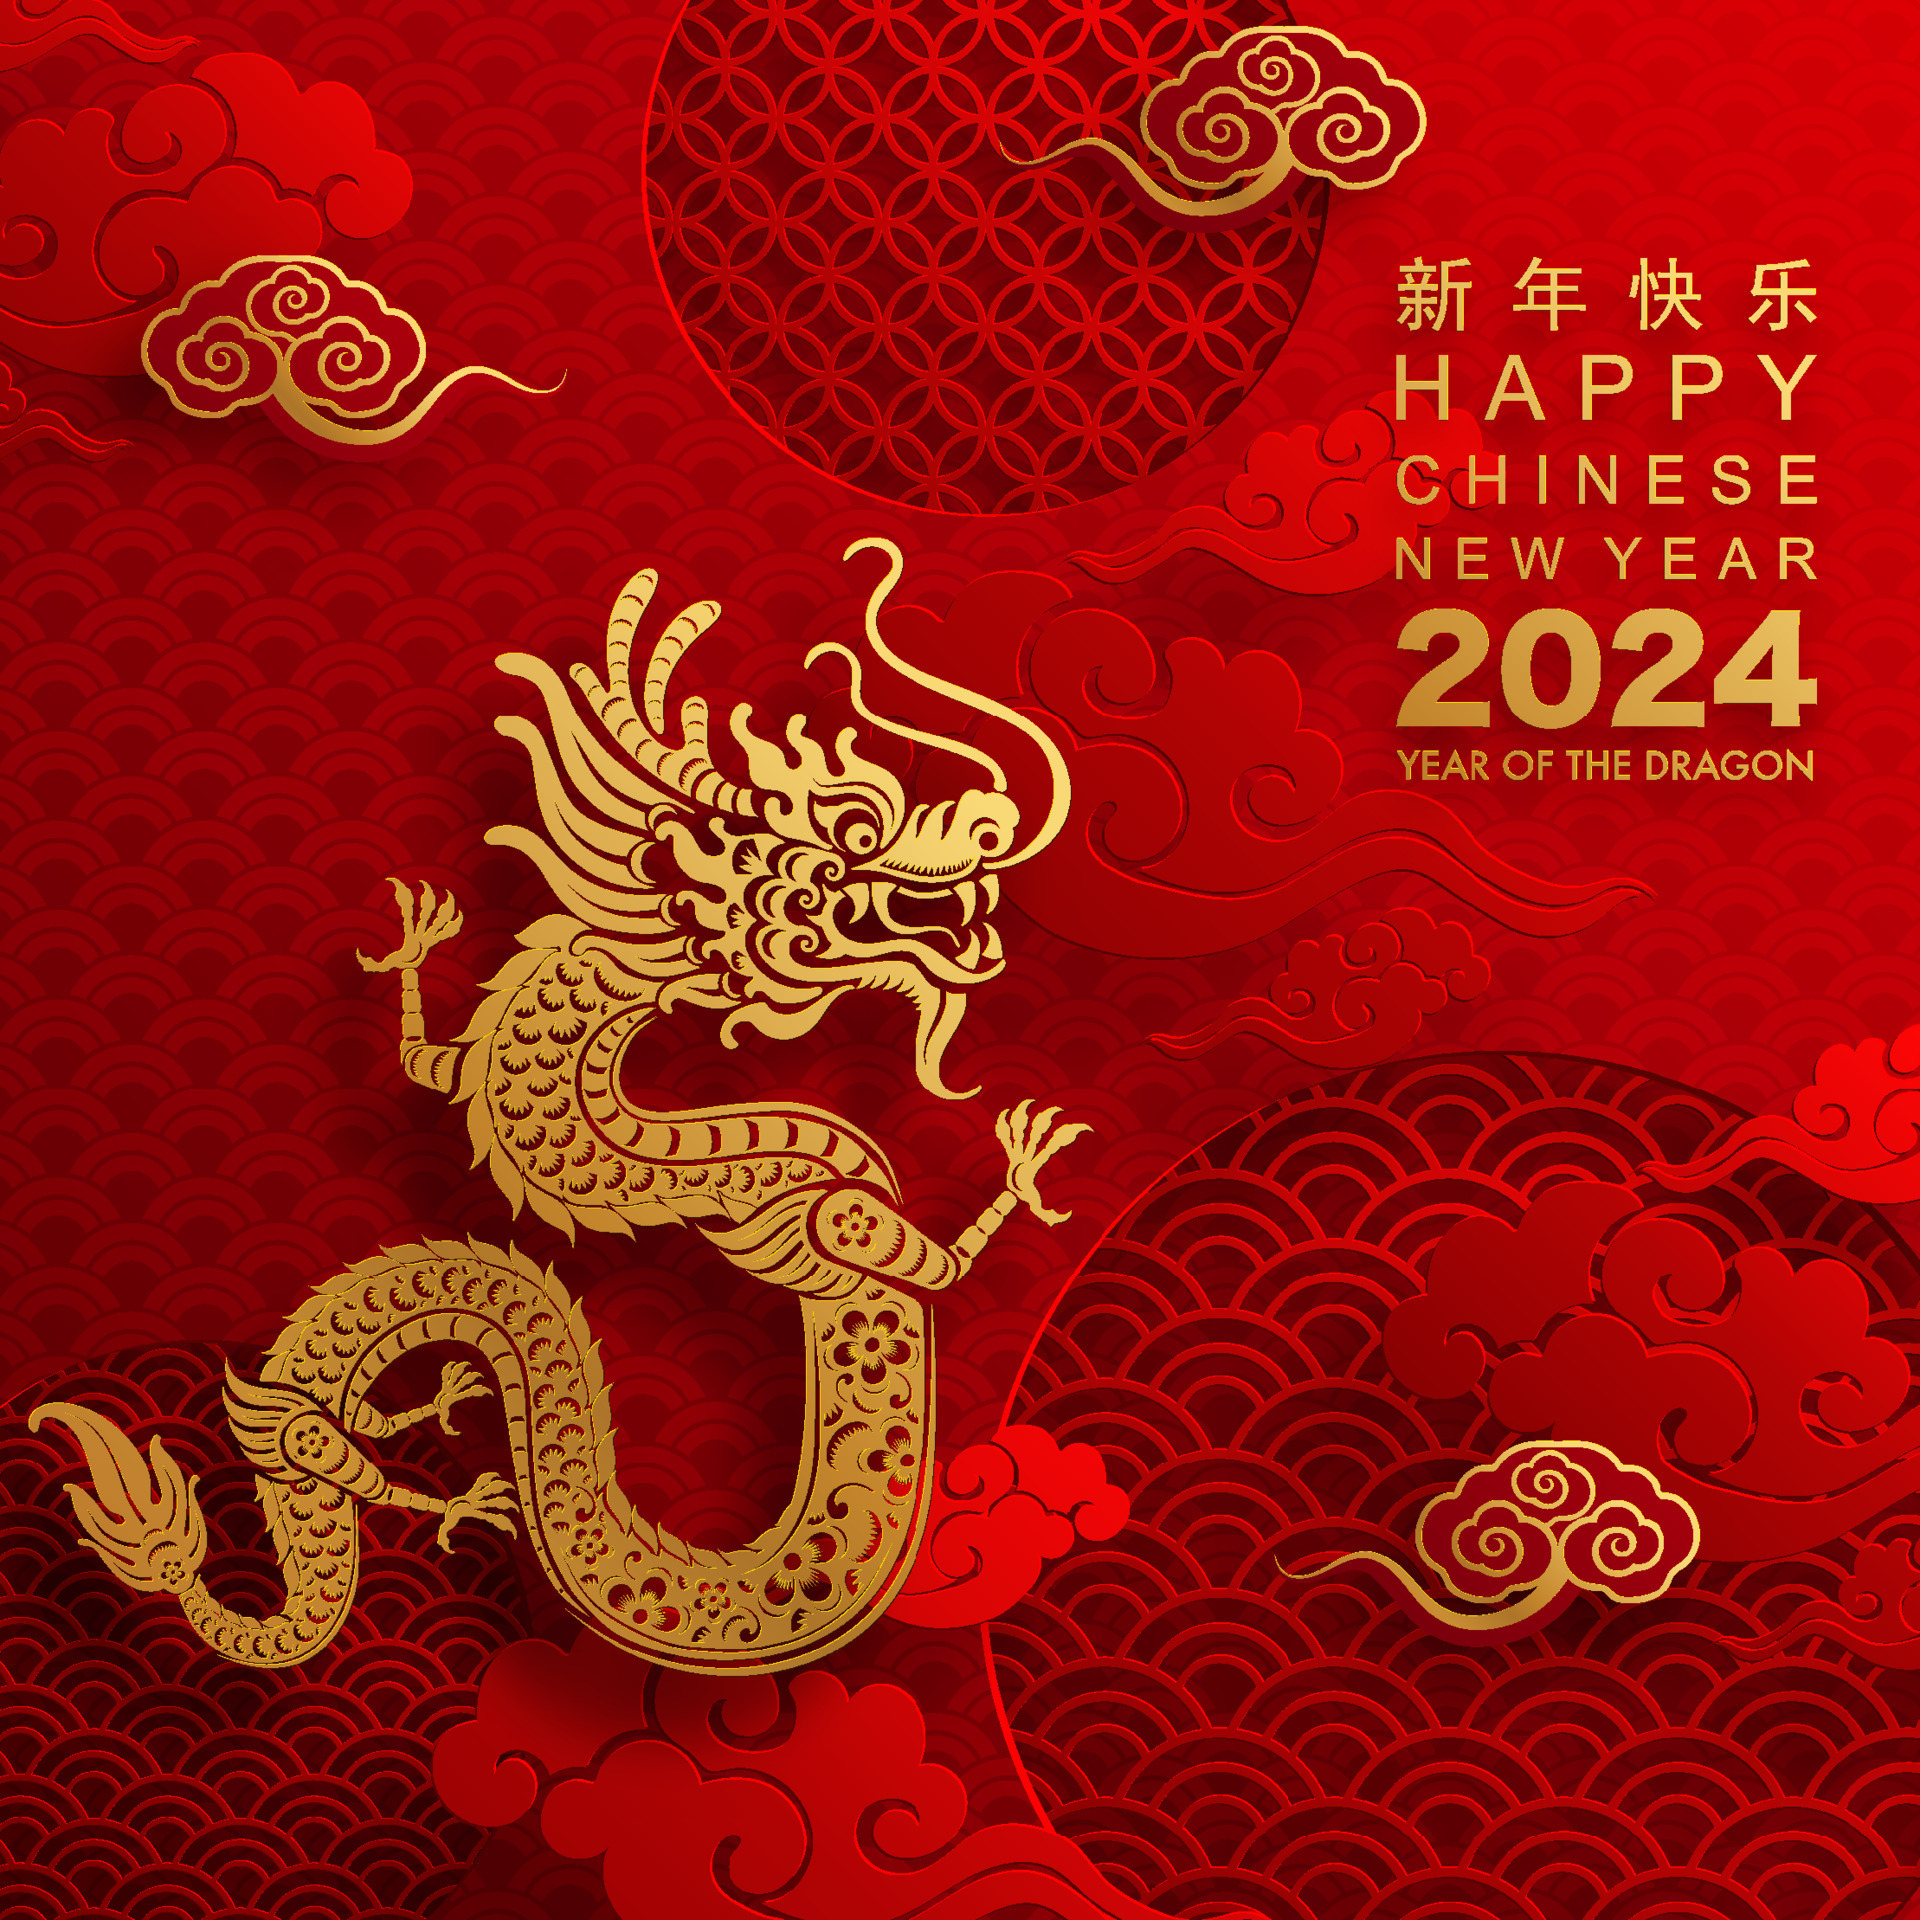 Новый год 2024 в китае какого числа. Китайский новый год 2024. Китайский новый год в 2024 году. Китайский год дракона 2024. Новый год дракона 2024.